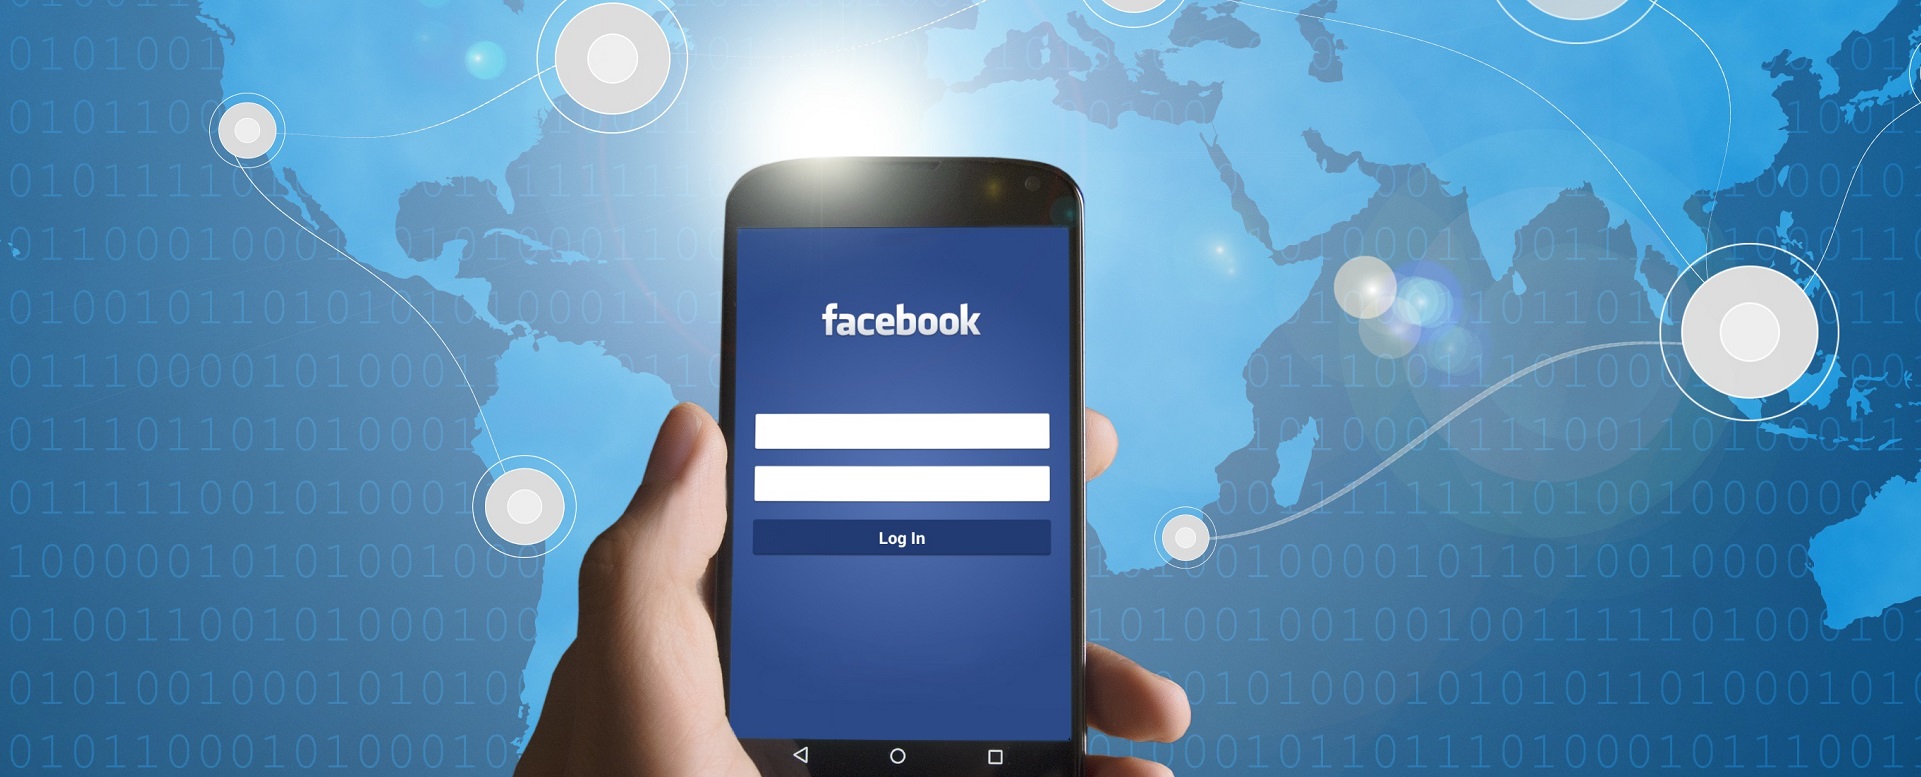 Cách xây dựng một fanpage Facebook hiệu quả cho chiến dịch marketing online?